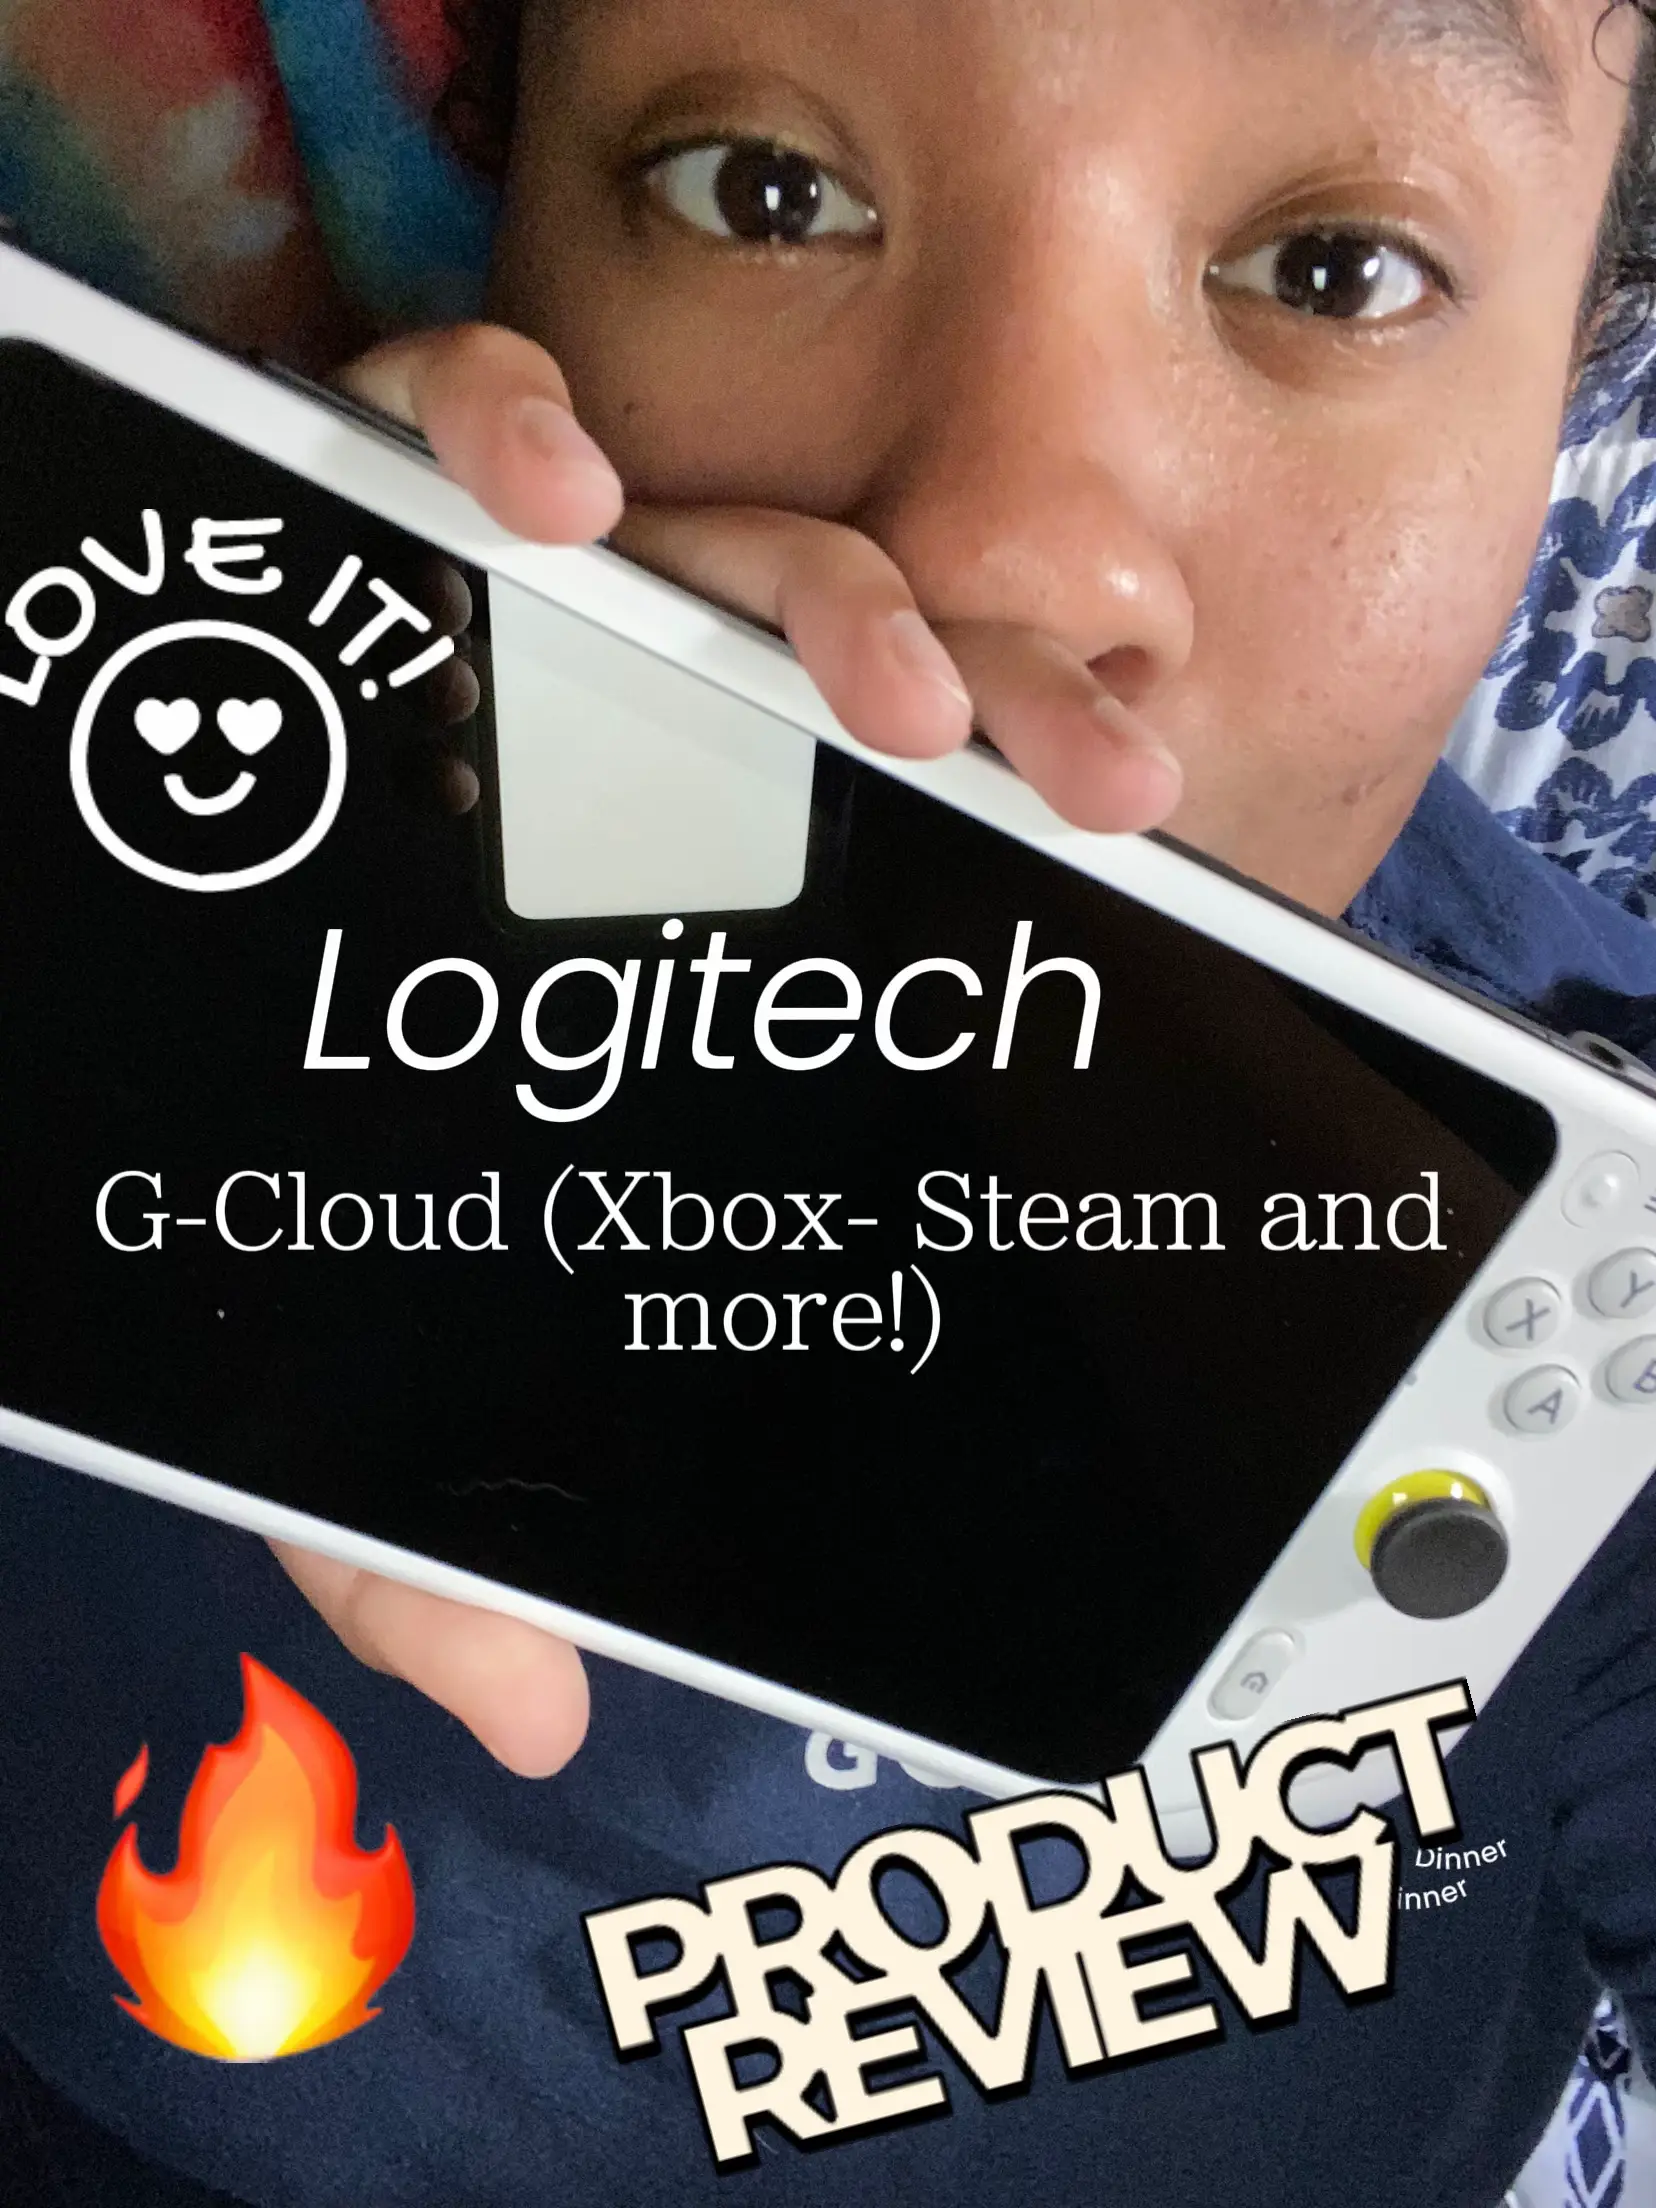 Logitech G CLOUD Xbox Cloud Gaming Device Info